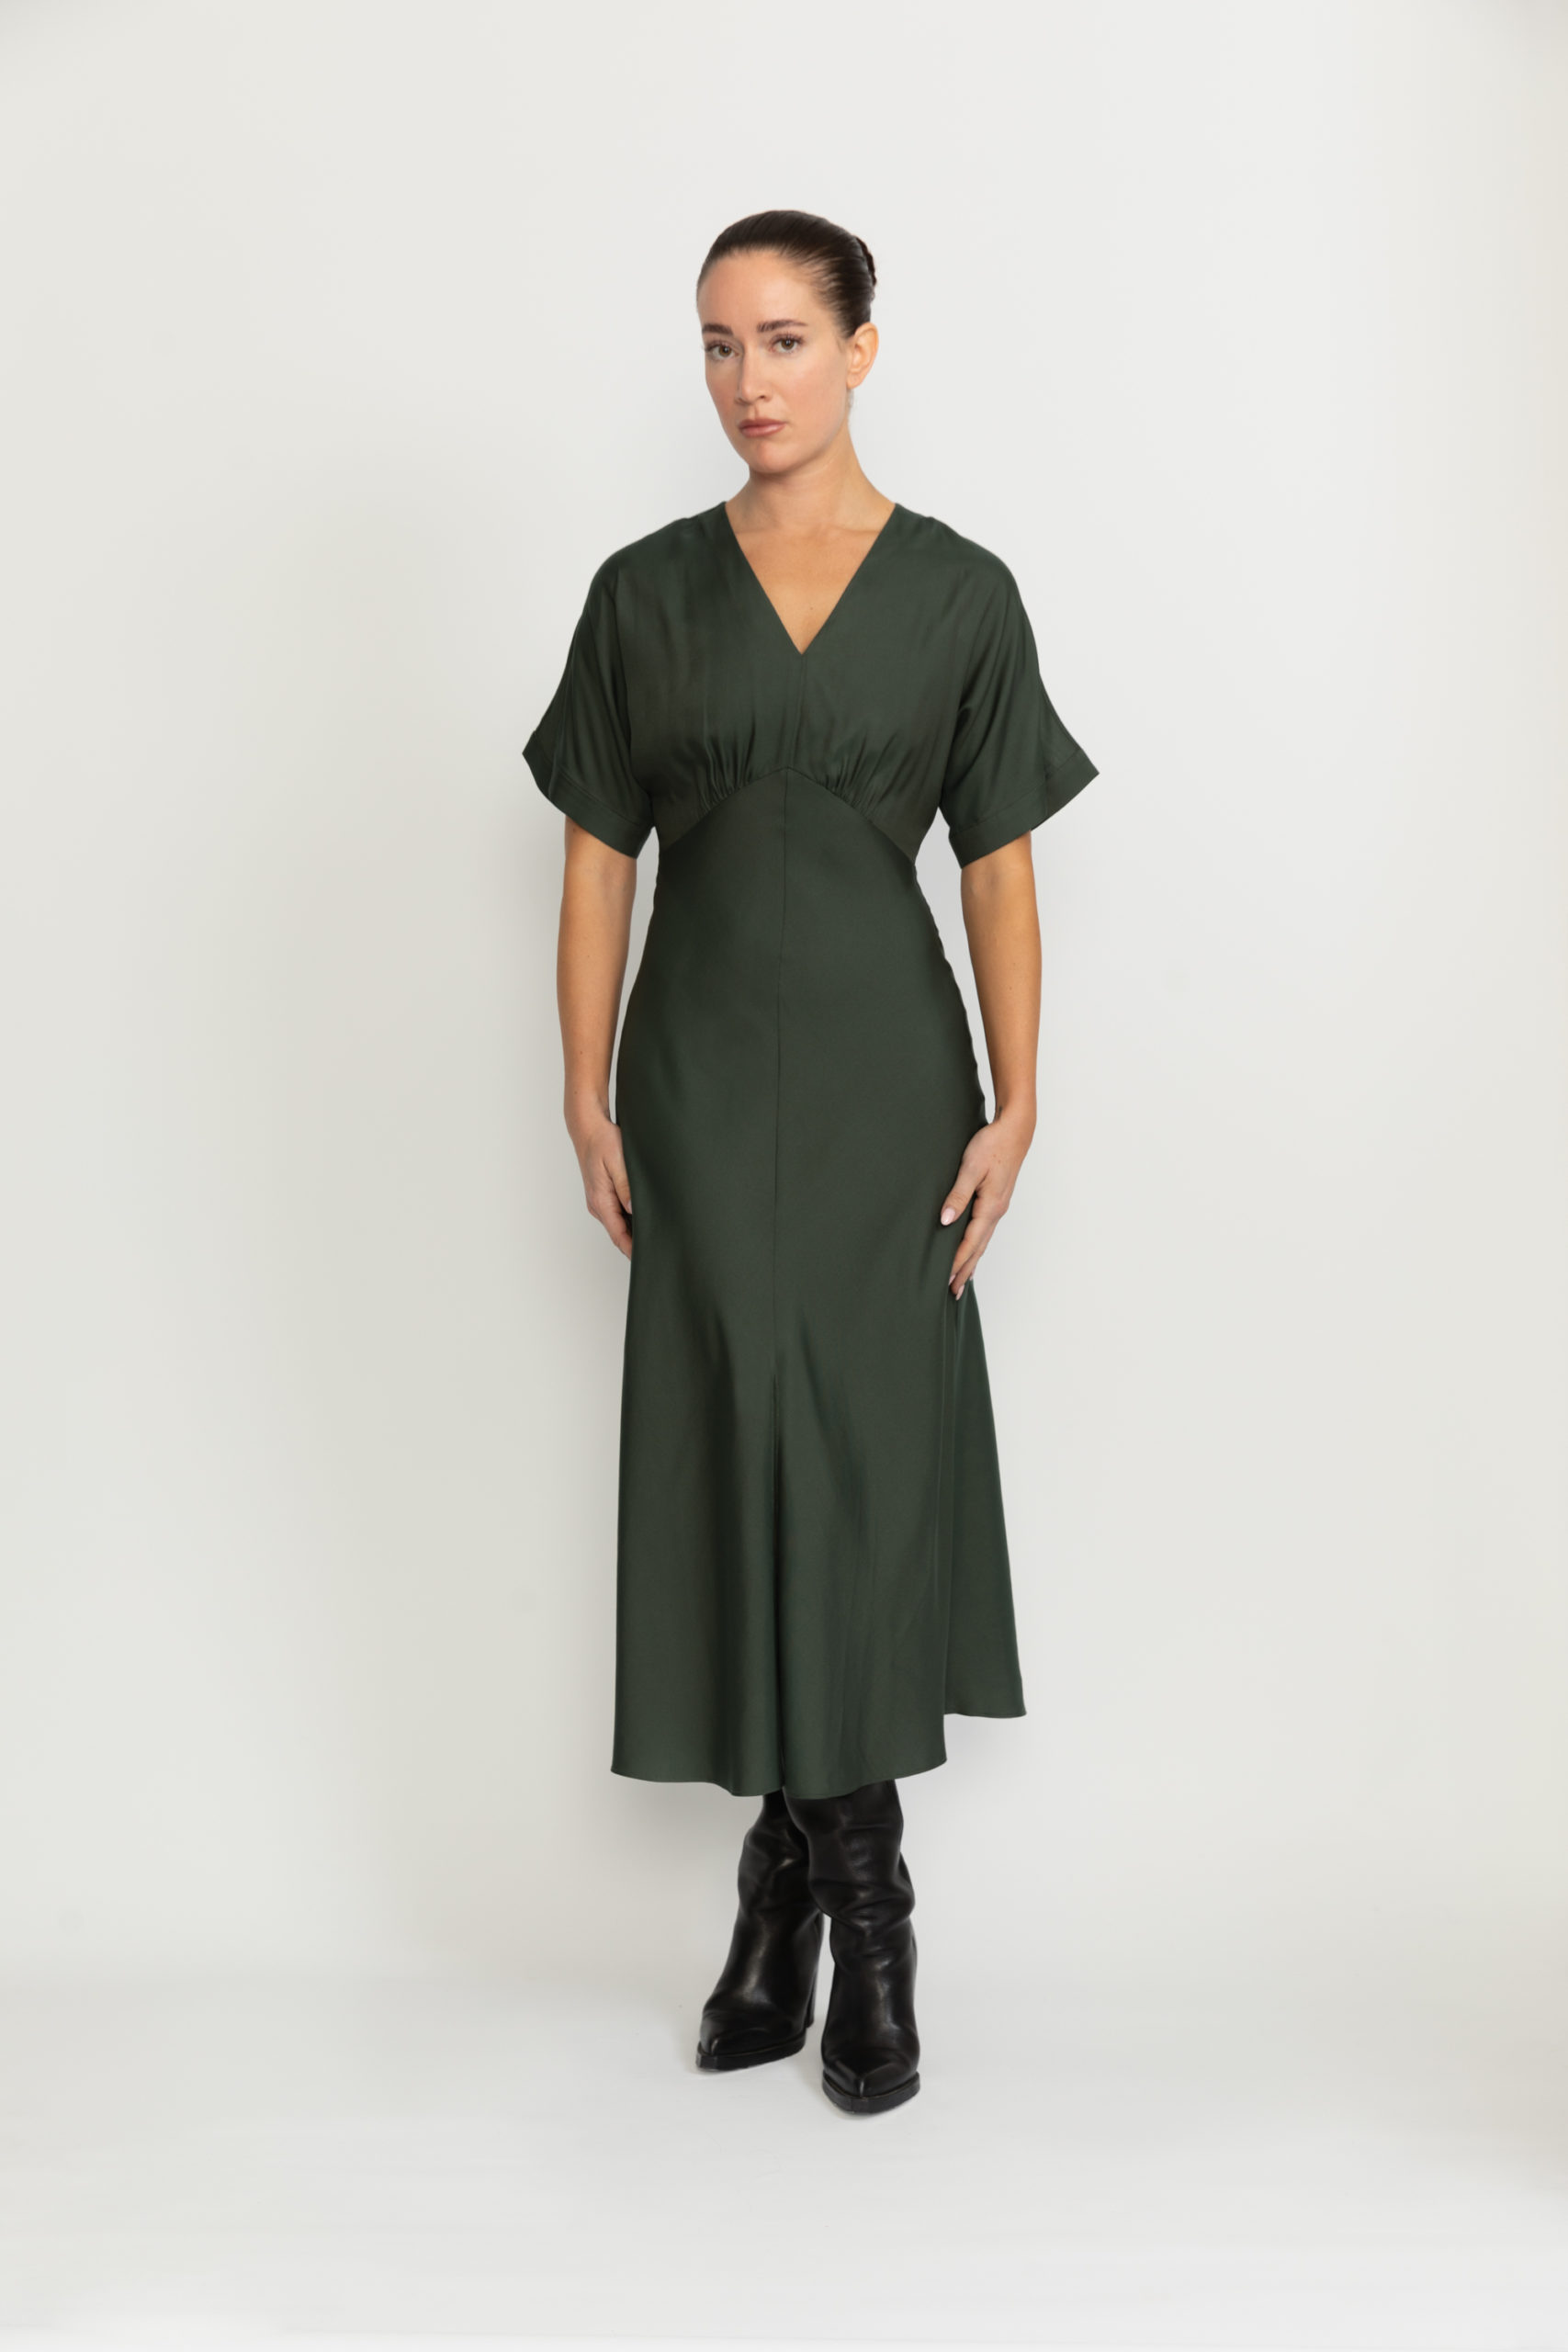 Bologna Dress – Bologna Forest Green A-line Flare Dress